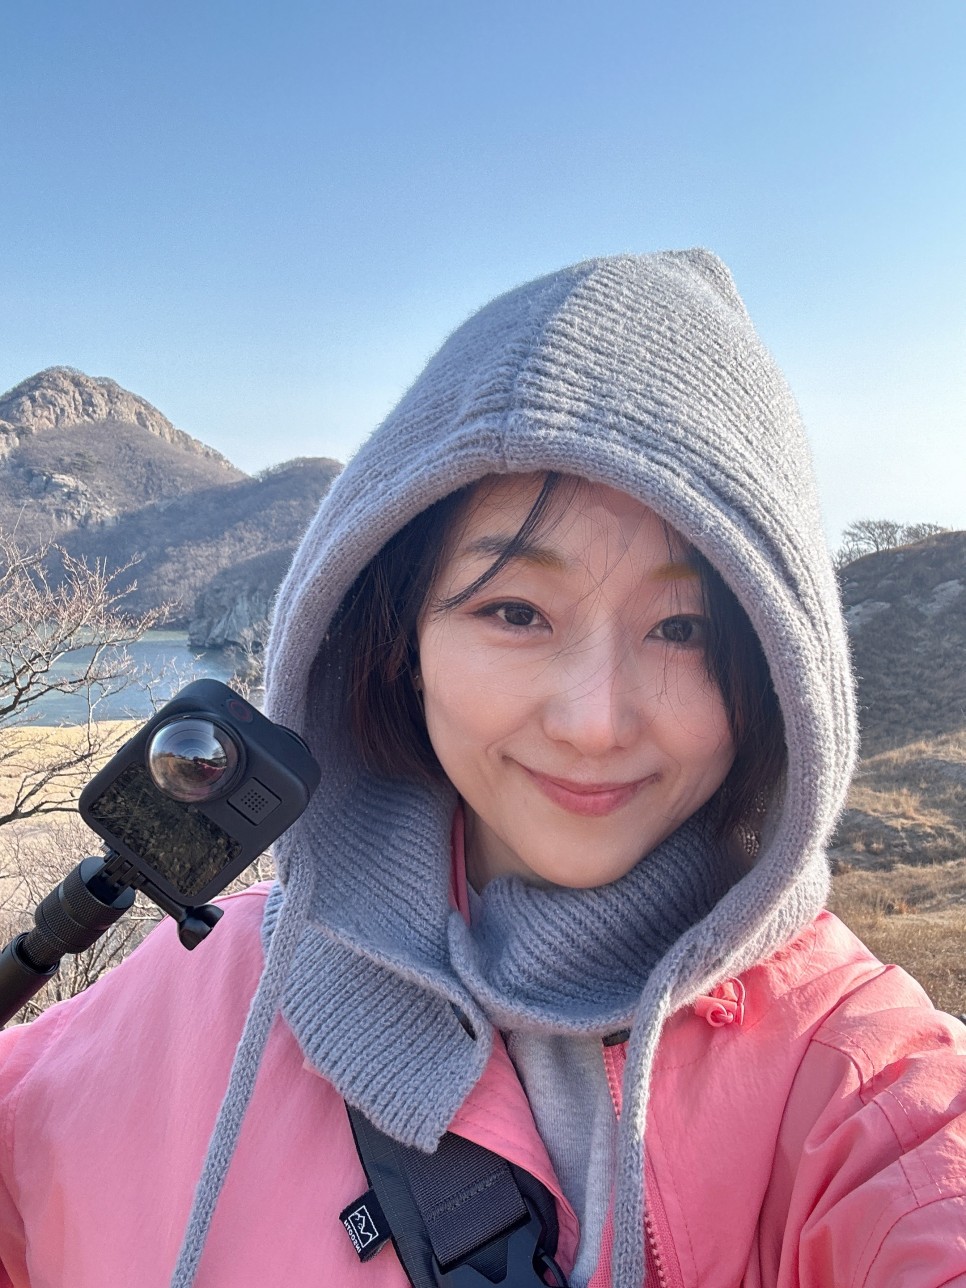 인천 보물섬 168캠페인 굴업도 여행 섬트레킹 구글지도 참여 후기